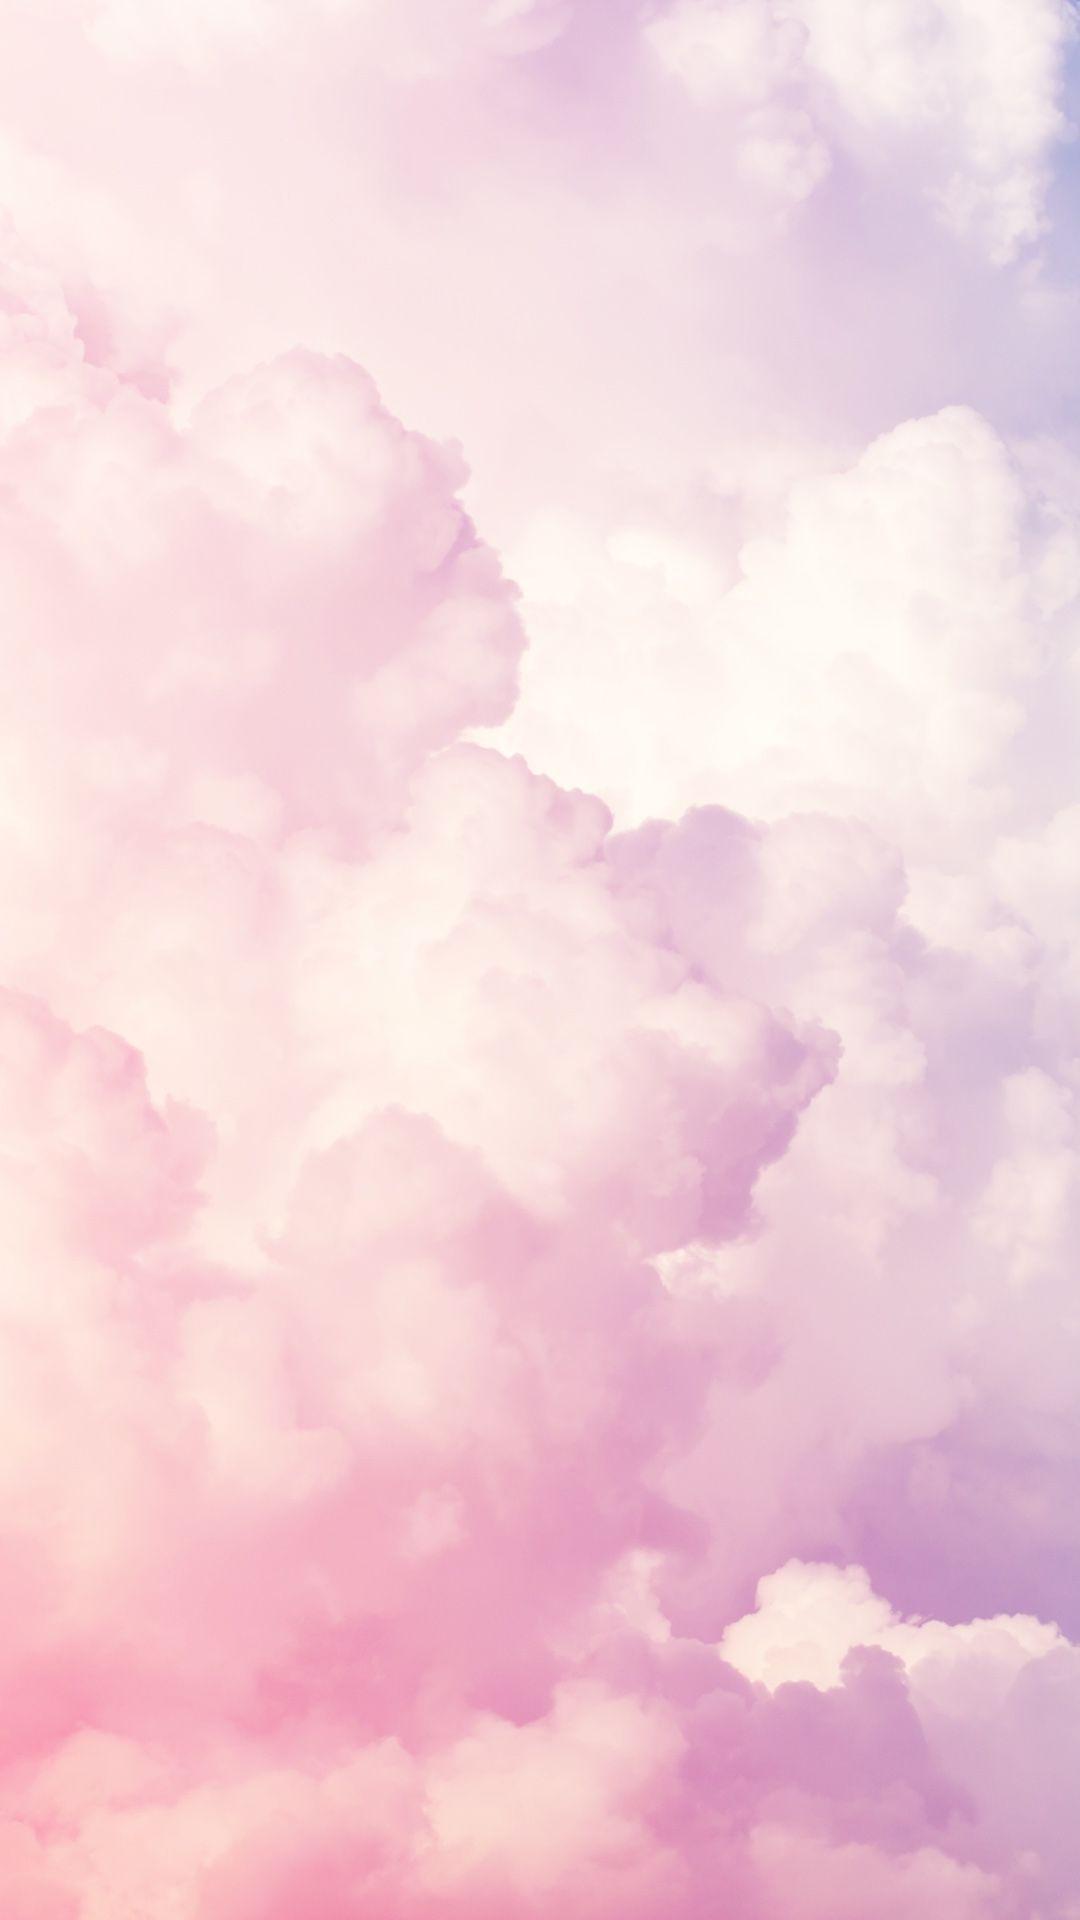 1080 x 1920 · jpeg - Pink clouds wallpaper | Pink clouds wallpaper, Clouds wallpaper iphone ...